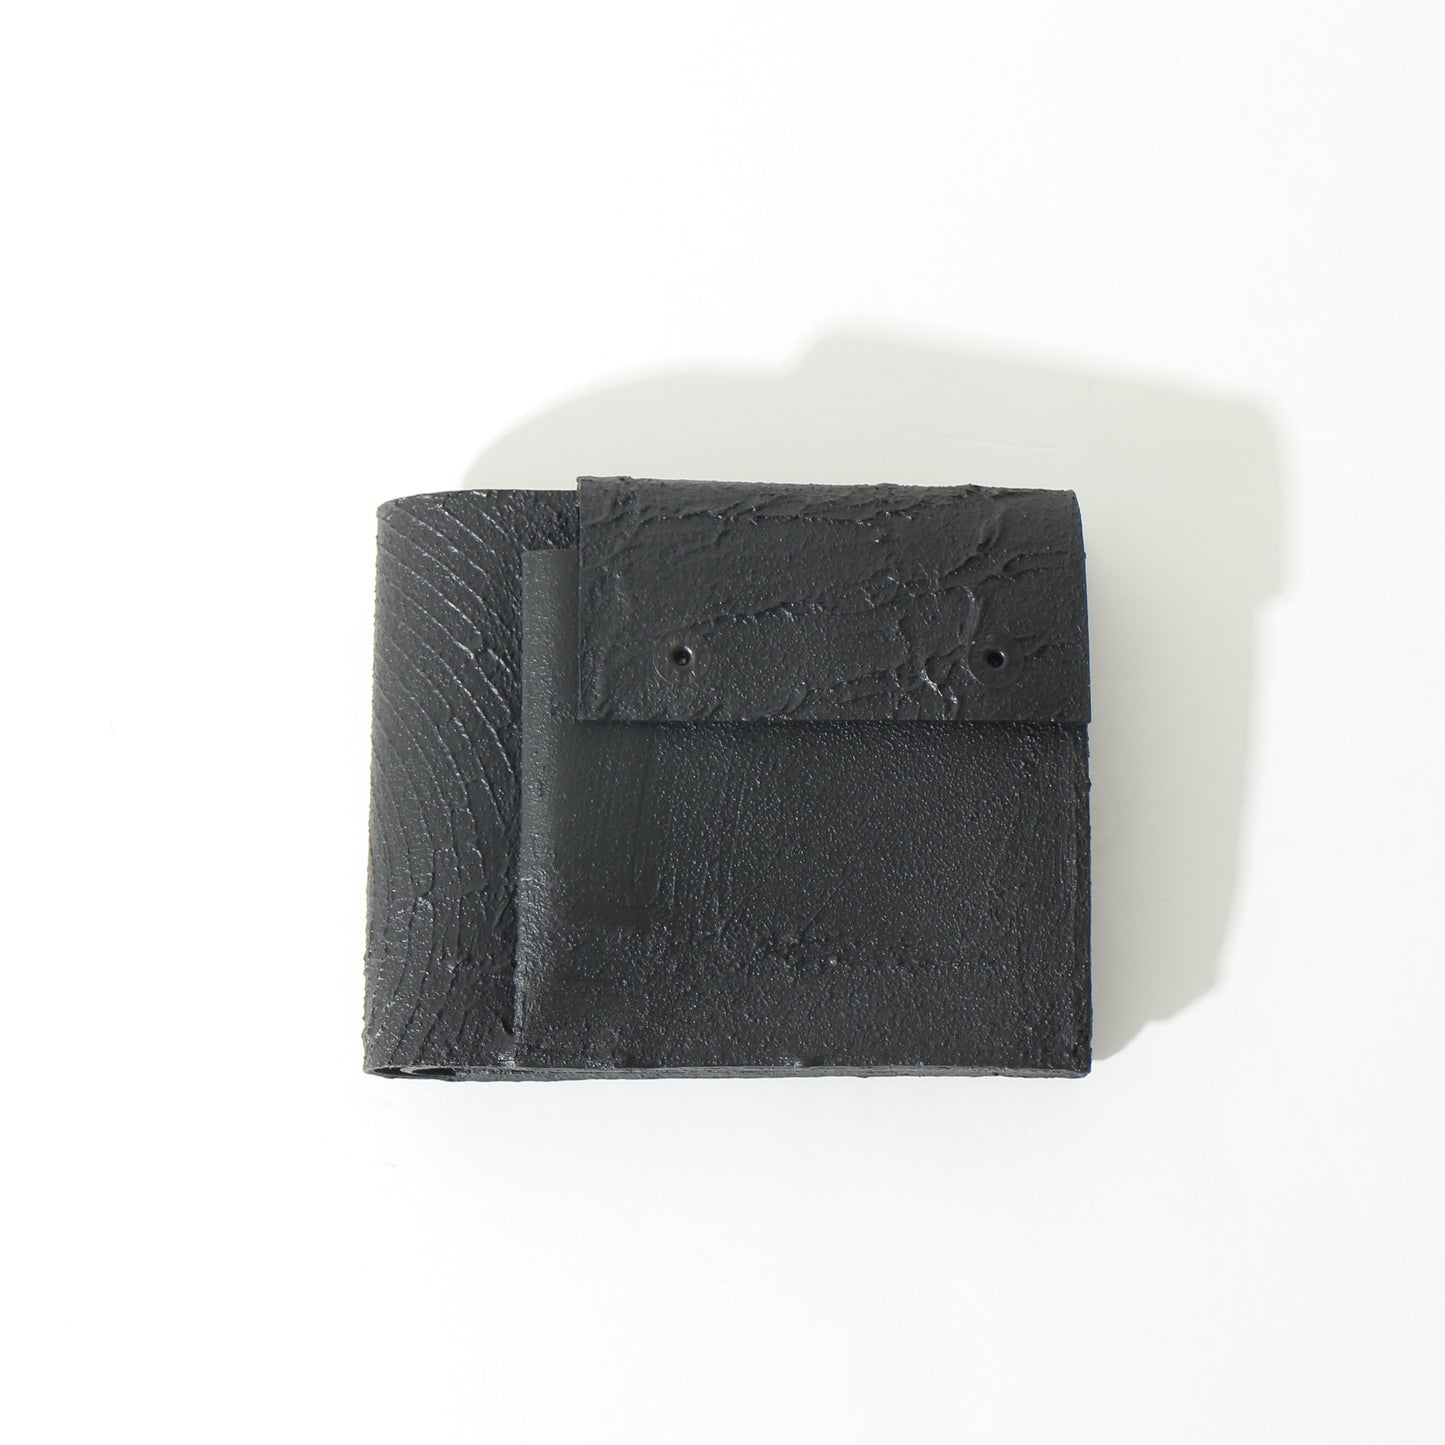 二つ折り財布/black